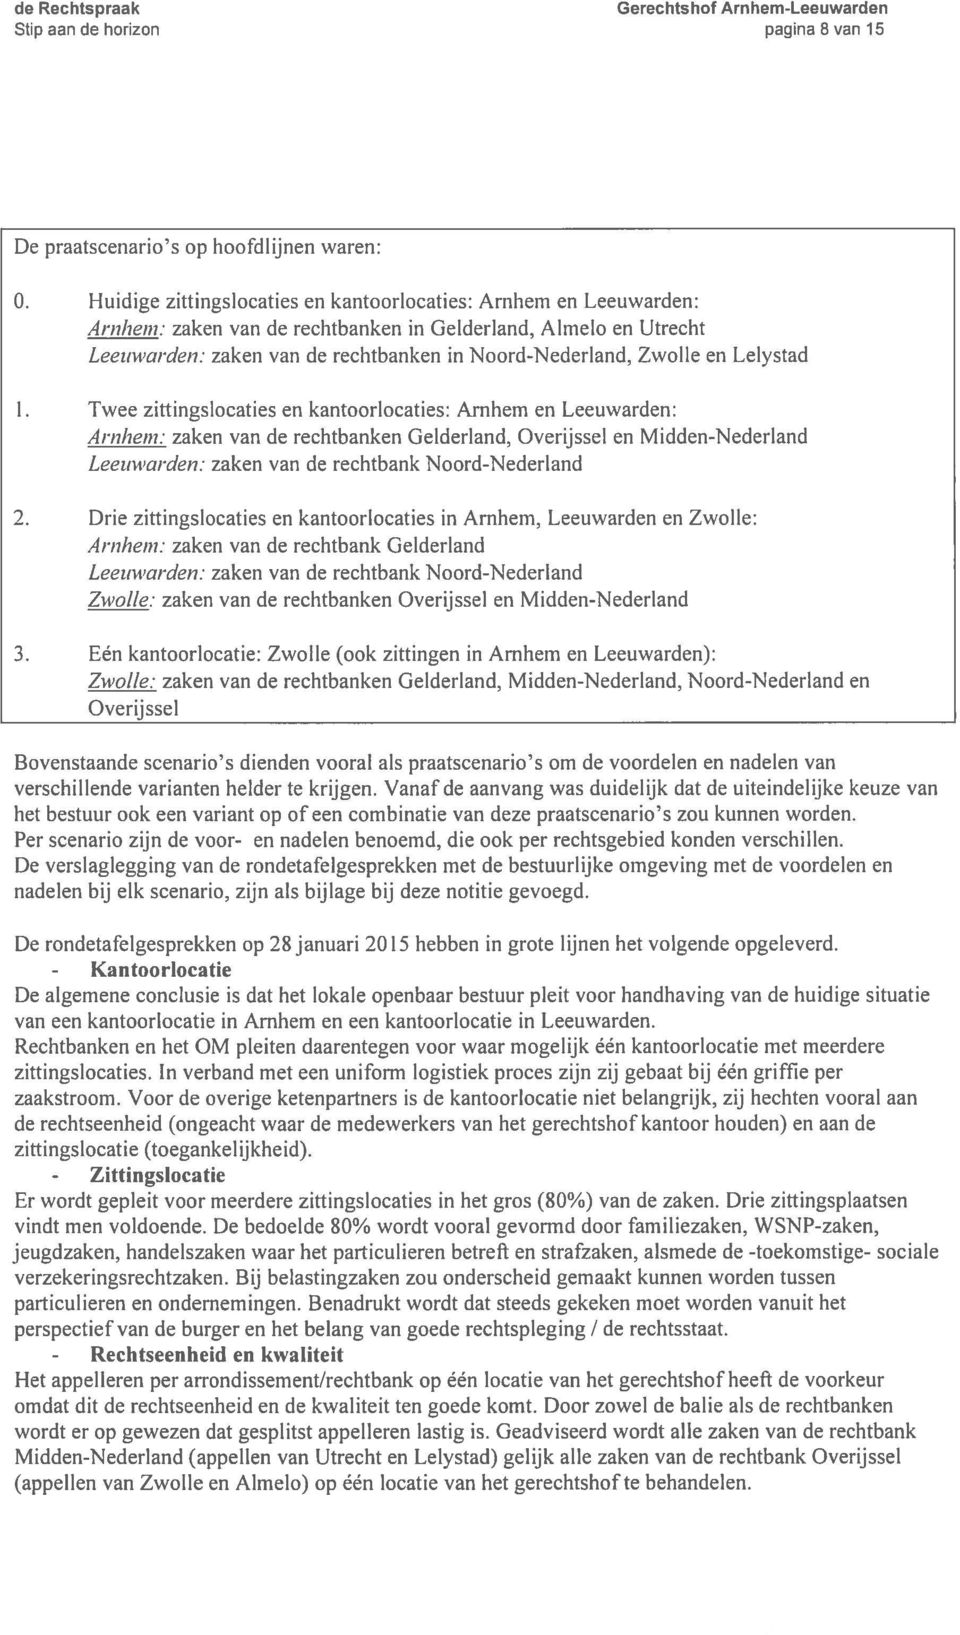 Lelystad 1. Twee zittingslocaties en kantoorlocaties: Arnhem en Leeuwarden: Arnhem: zaken van de rechtbanken Gelderland, Overijssel en Midden-Nederland Leeuwarden.